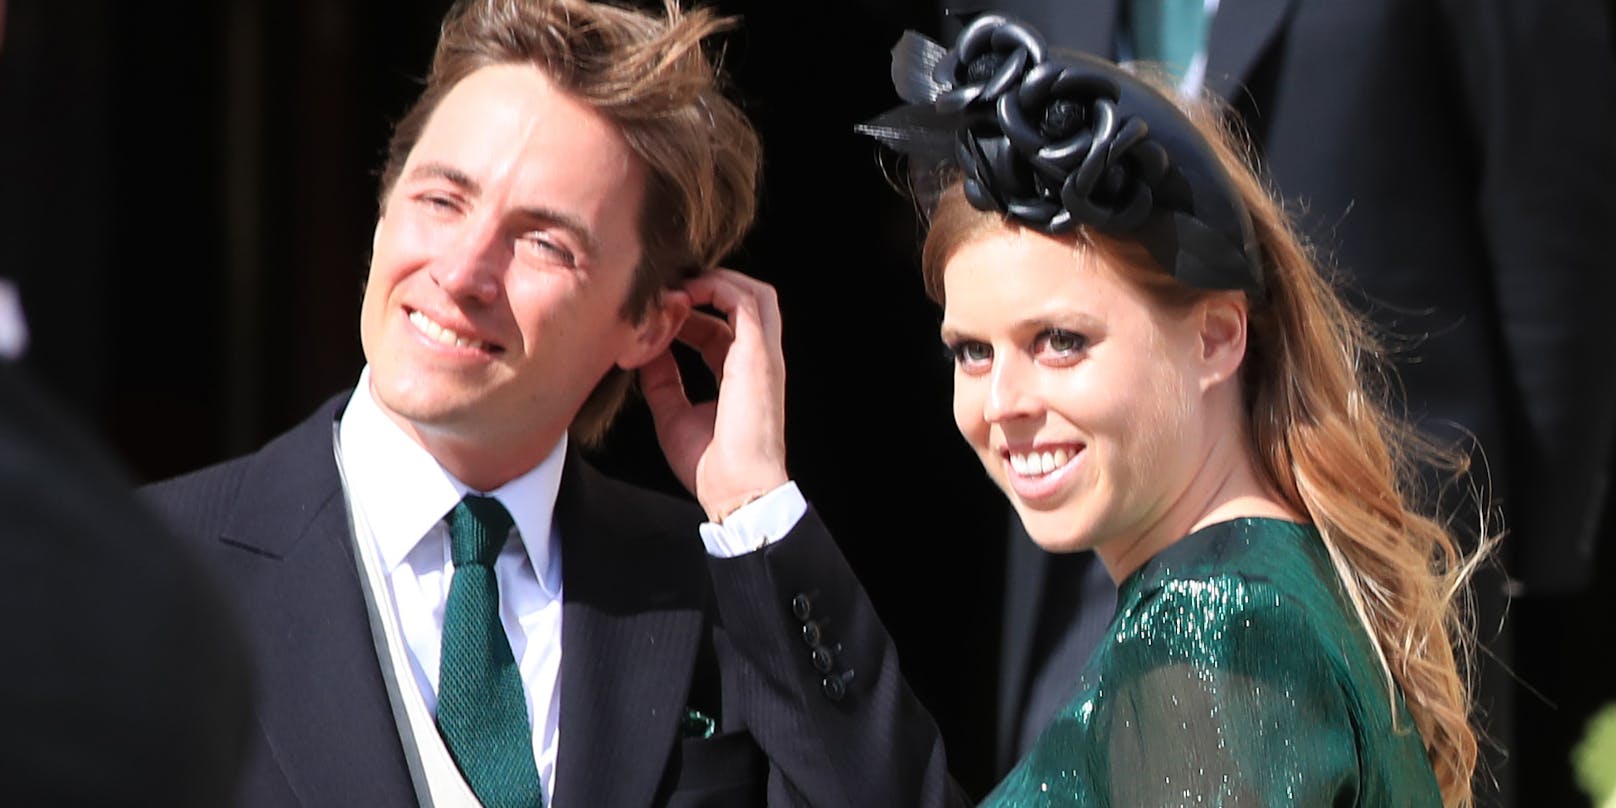 Prinzessin Beatrice (31) und der Unternehmer Edoardo Mapelli Mozzi (37) haben am Freitagmorgen überraschend geheiratet. Dies berichtet die britische Presse. Fotos von der Trauung hat das britische Königshaus bislang noch nicht veröffentlicht.